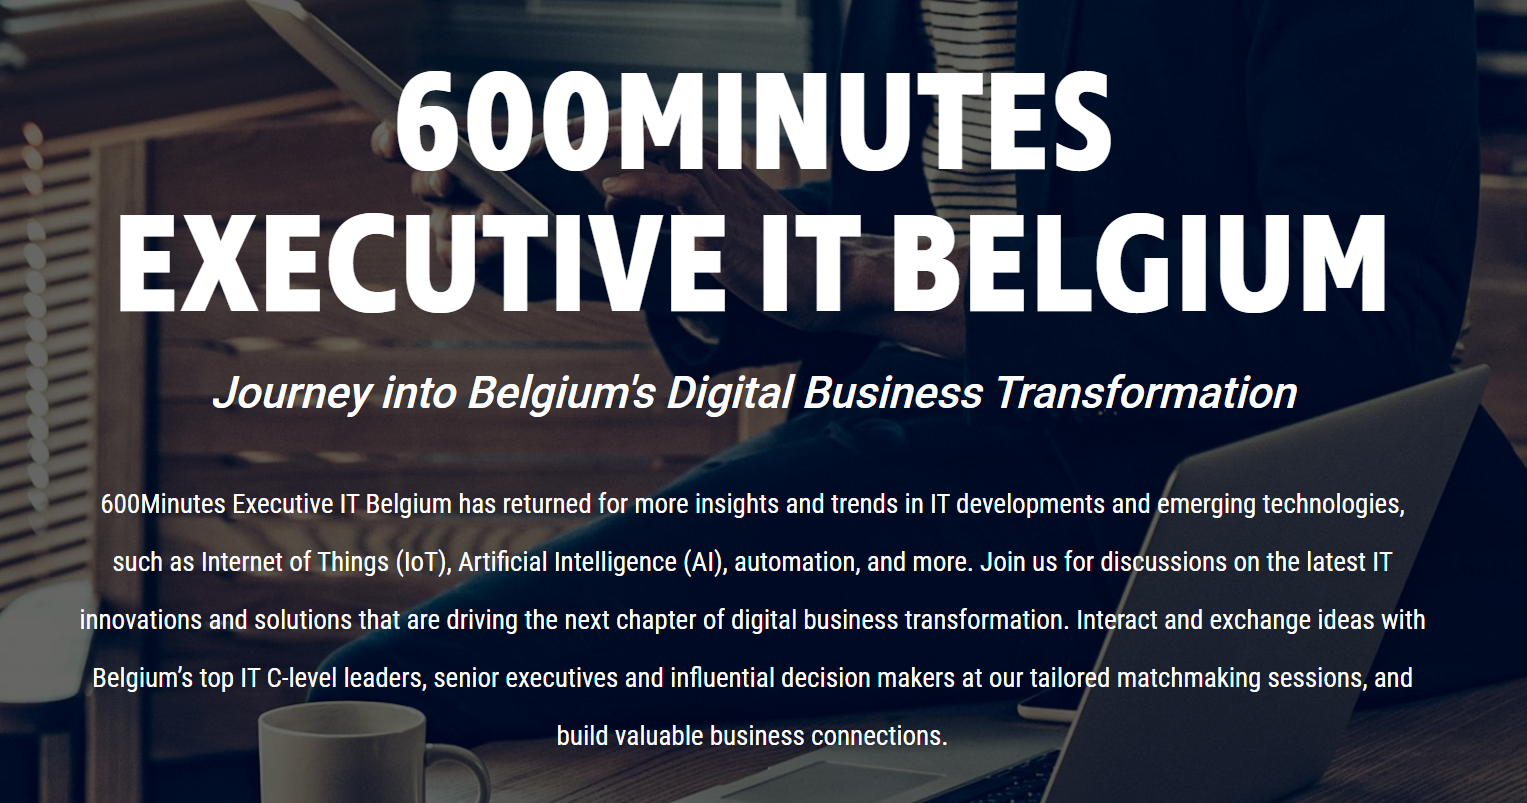 600Minutes Executive IT Belgium, MECHELEN, Belgium